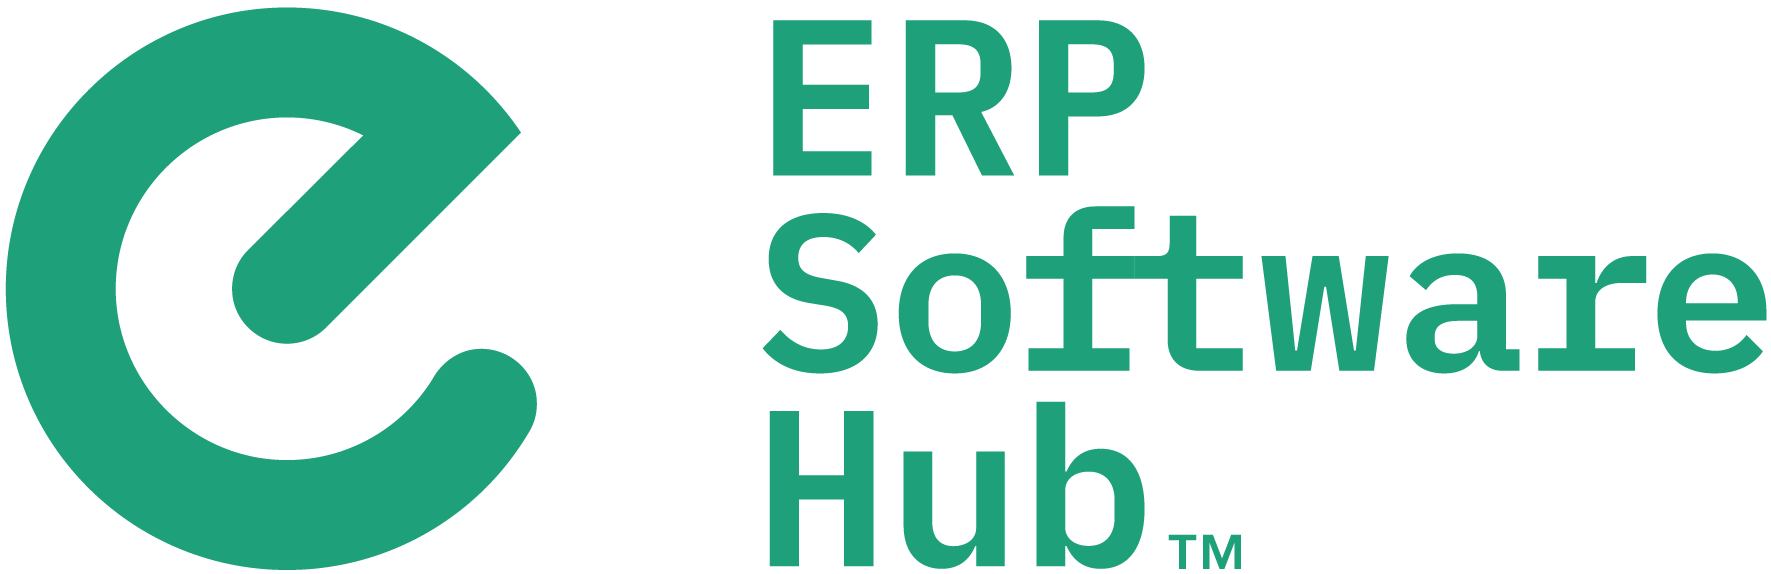 ERP Software Hub